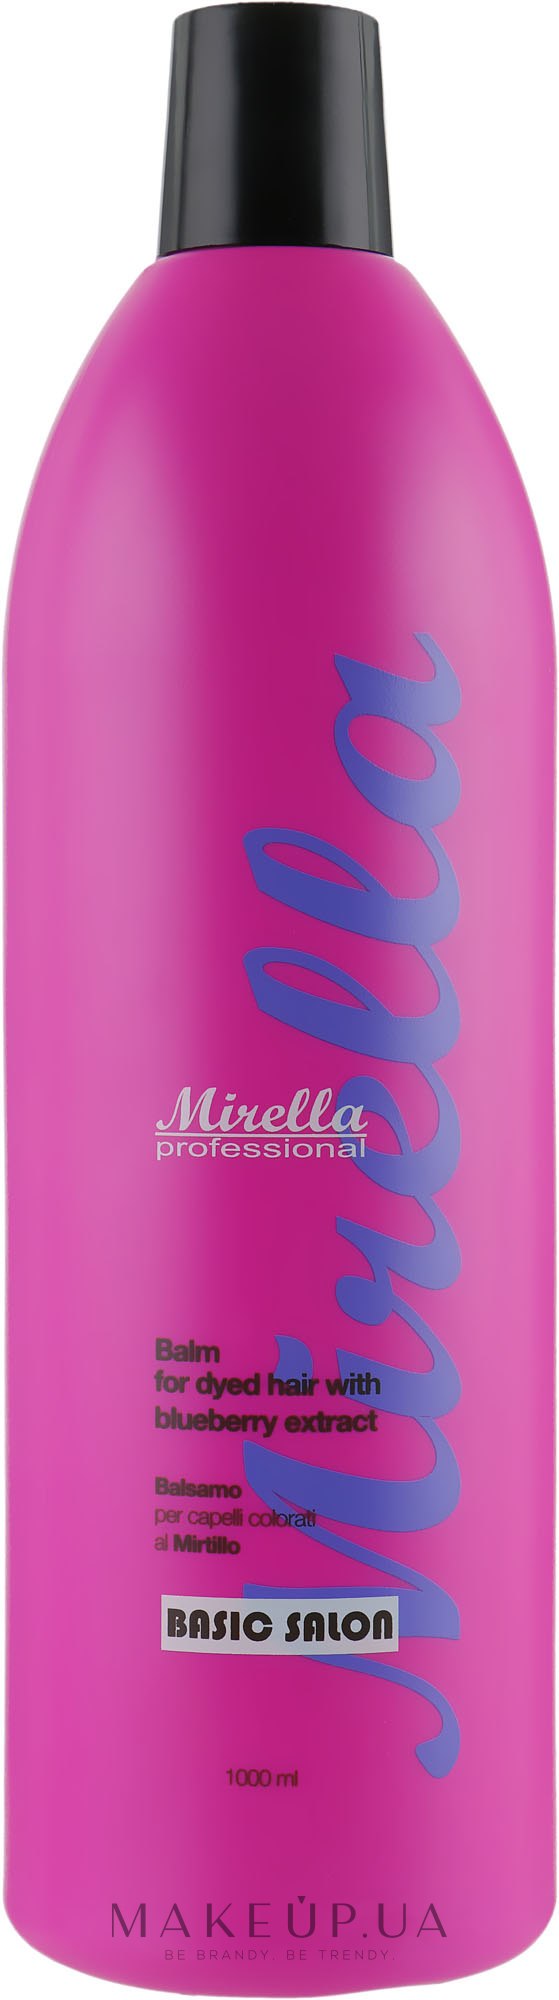 Бальзам для окрашенных волос с экстрактом черники - Mirella Professional HAIR FACTOR Balm with Blueberry Extract — фото 1000ml